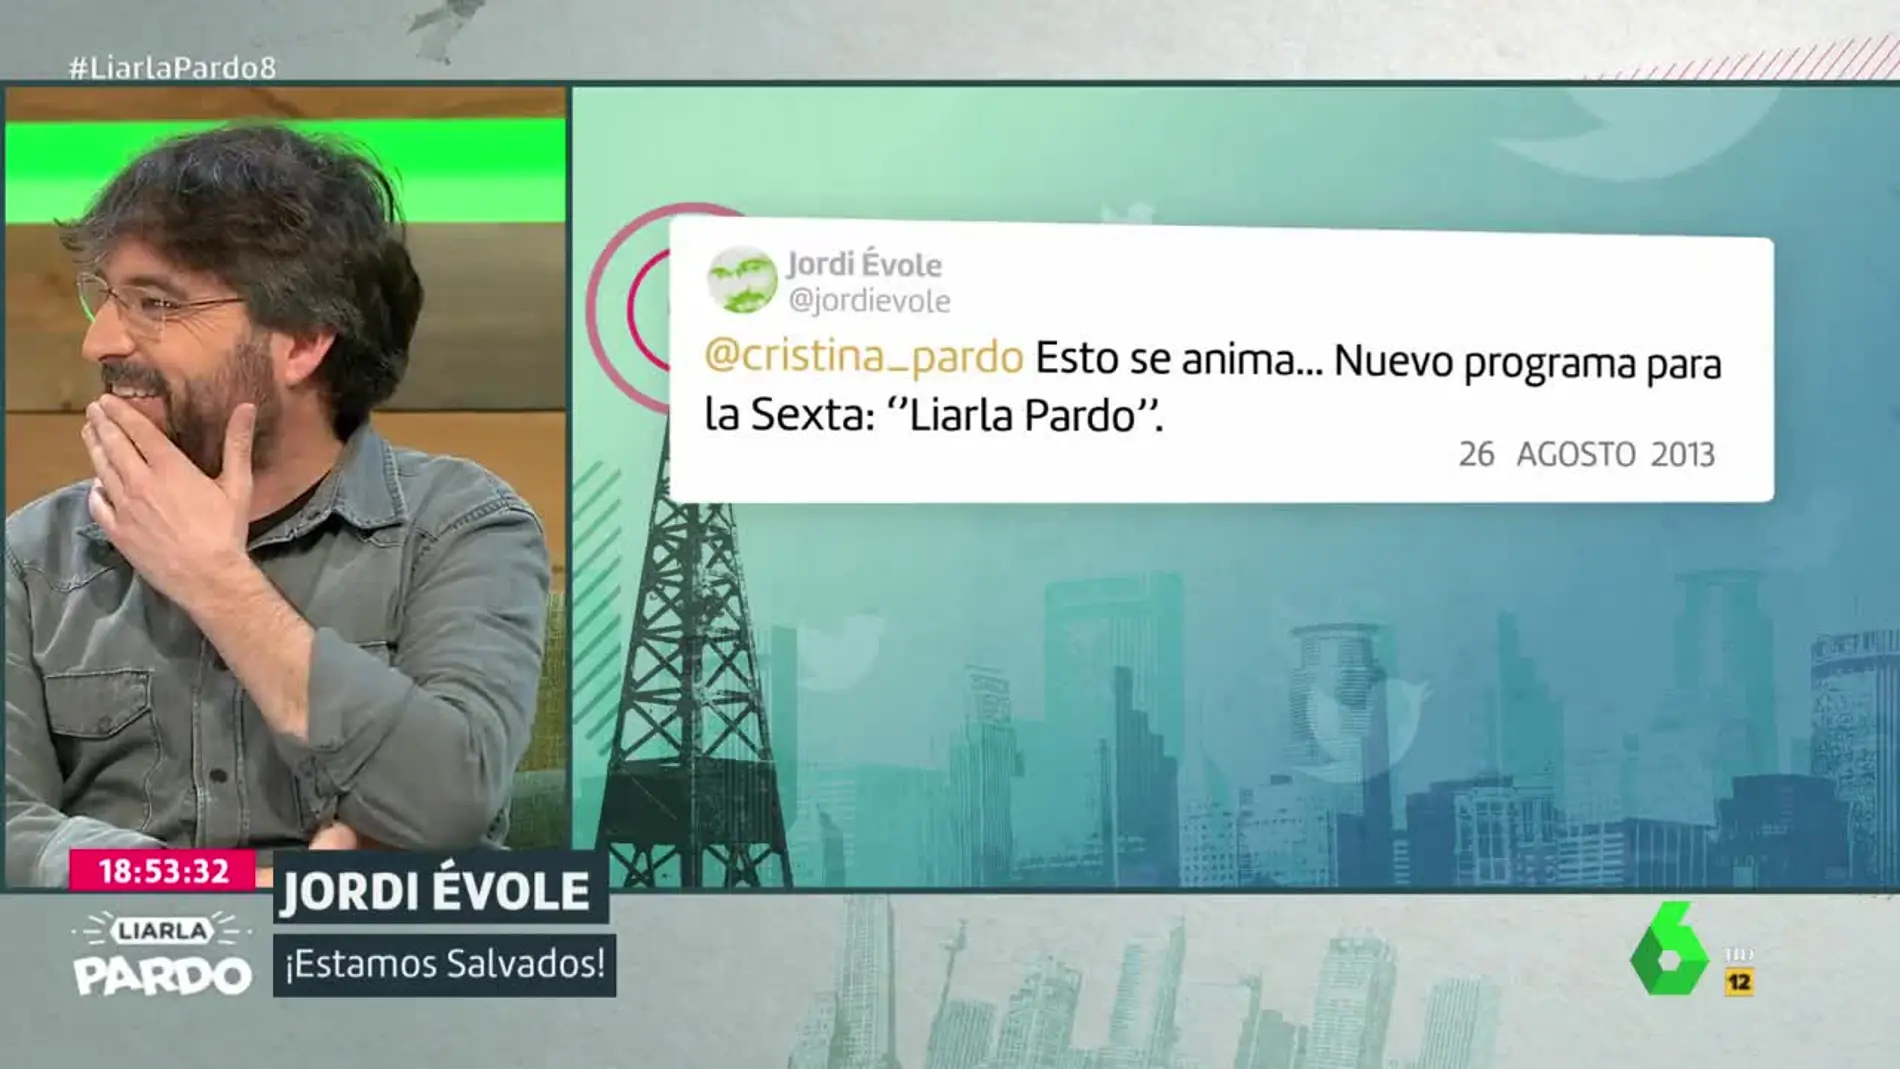 Jordi Évole ya predijo en 2013 que Cristina Pardo estaría en Liarla Pardo